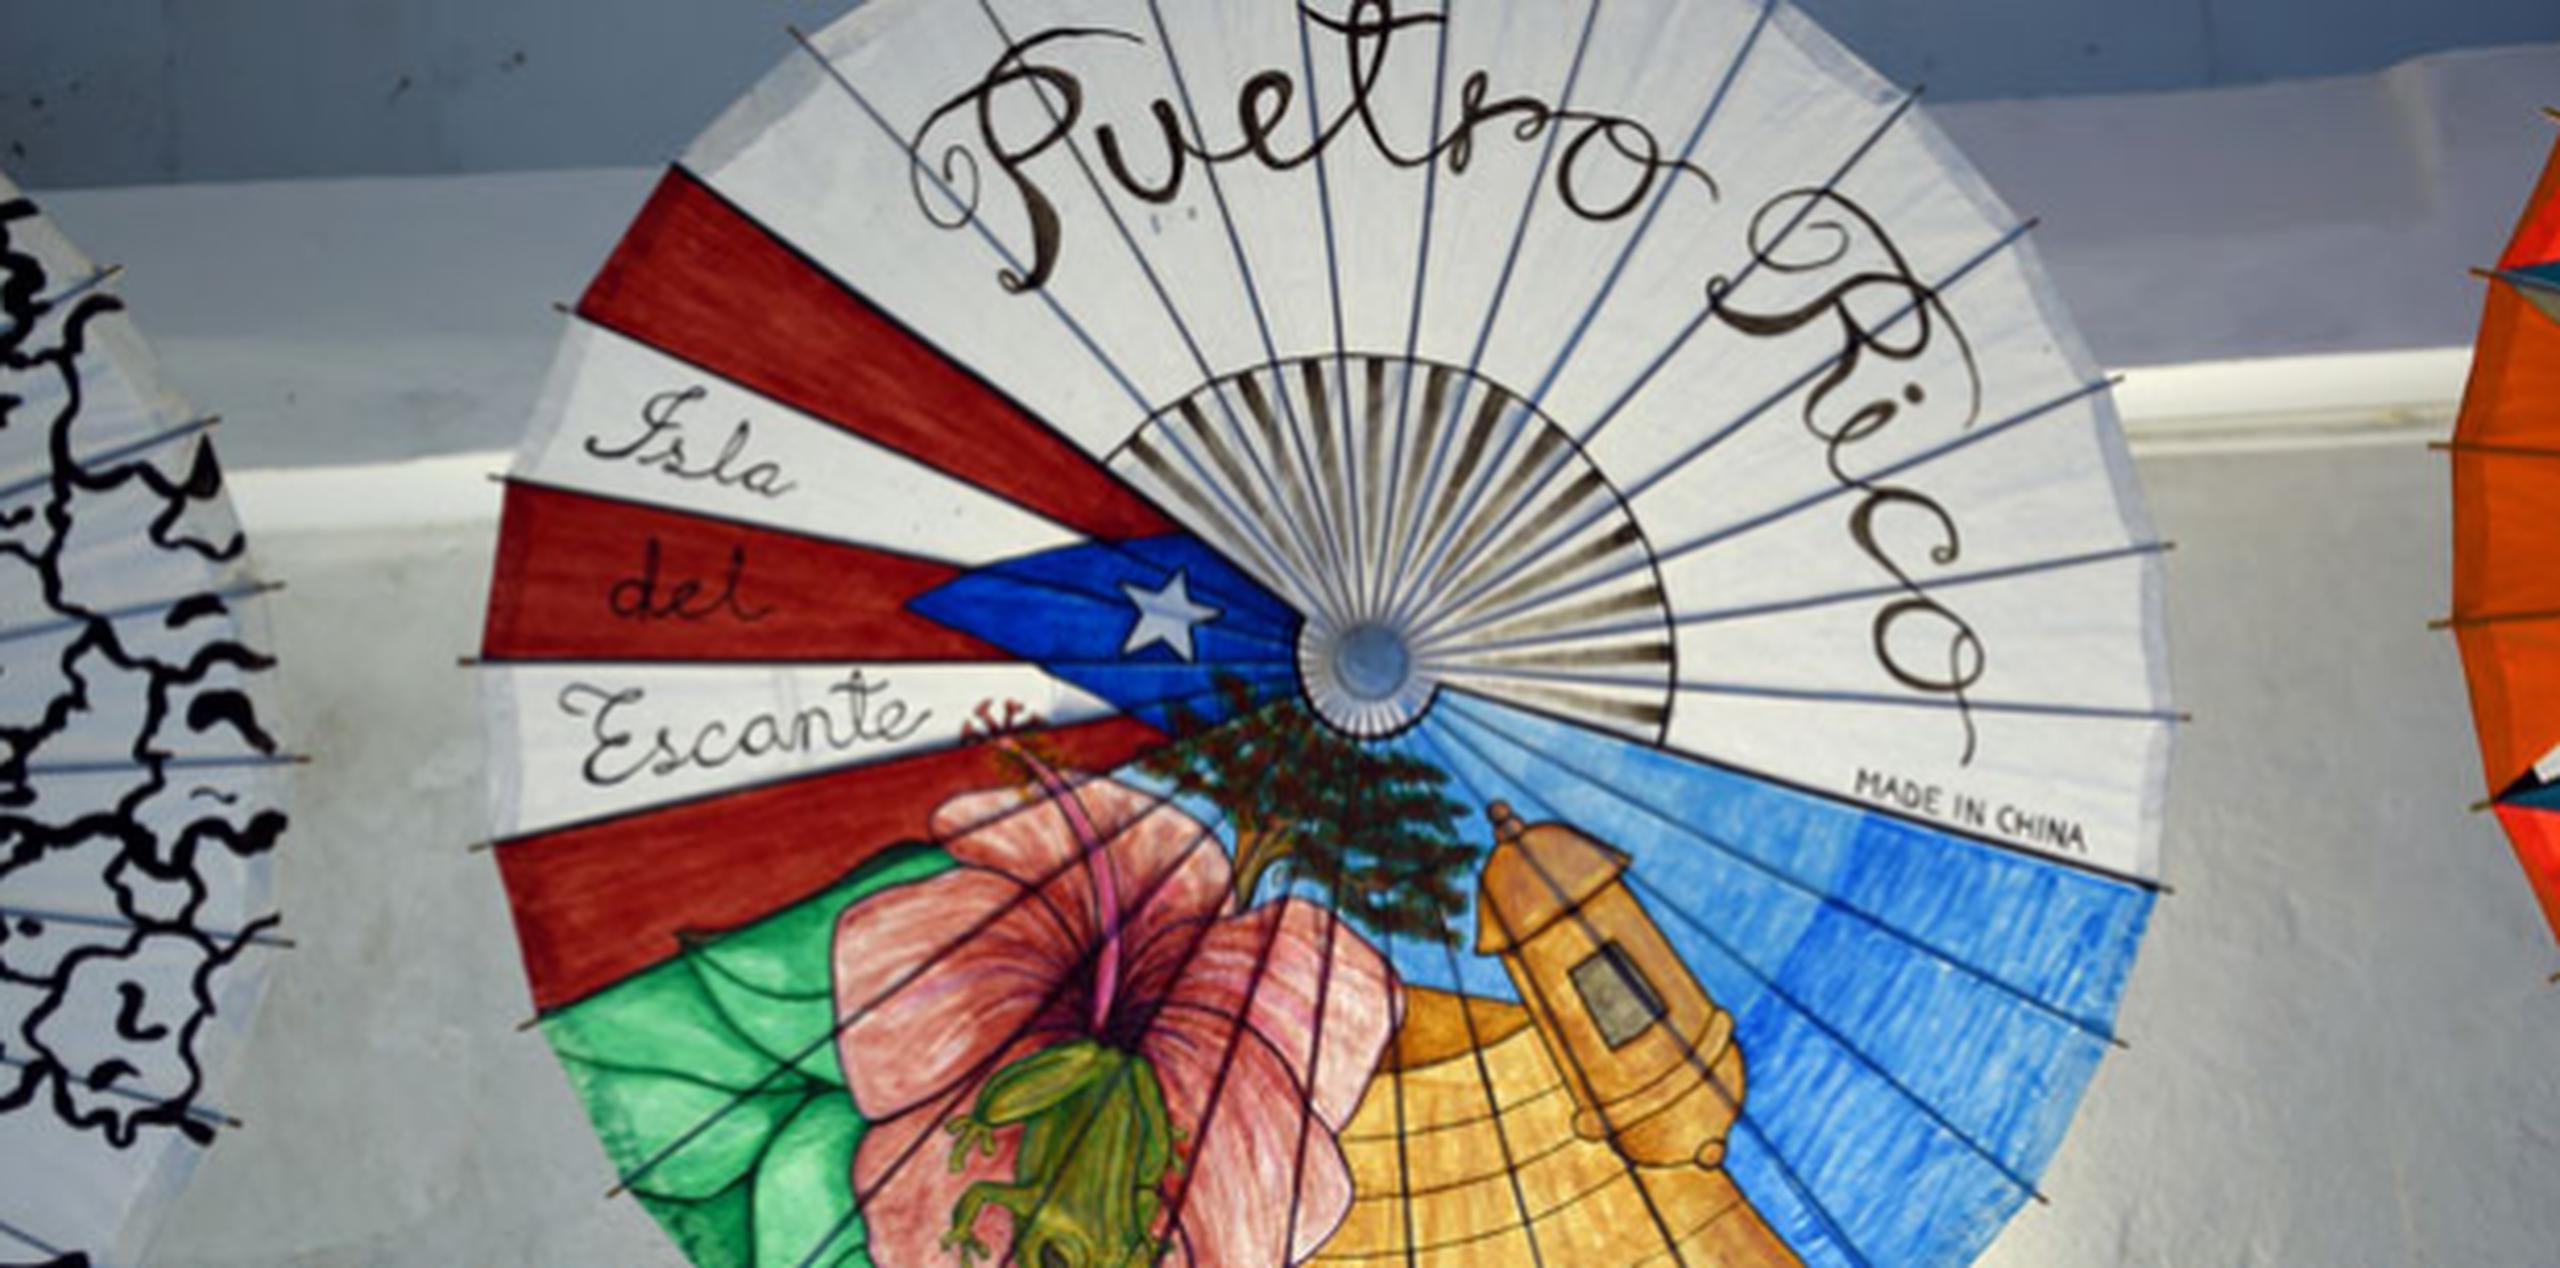 La muestra se compone de 44 sombrillas orientales que fueron intervenidas por 44 artistas puertorriqueños de diversas generaciones. (andre.kang@gfrmedia.com)